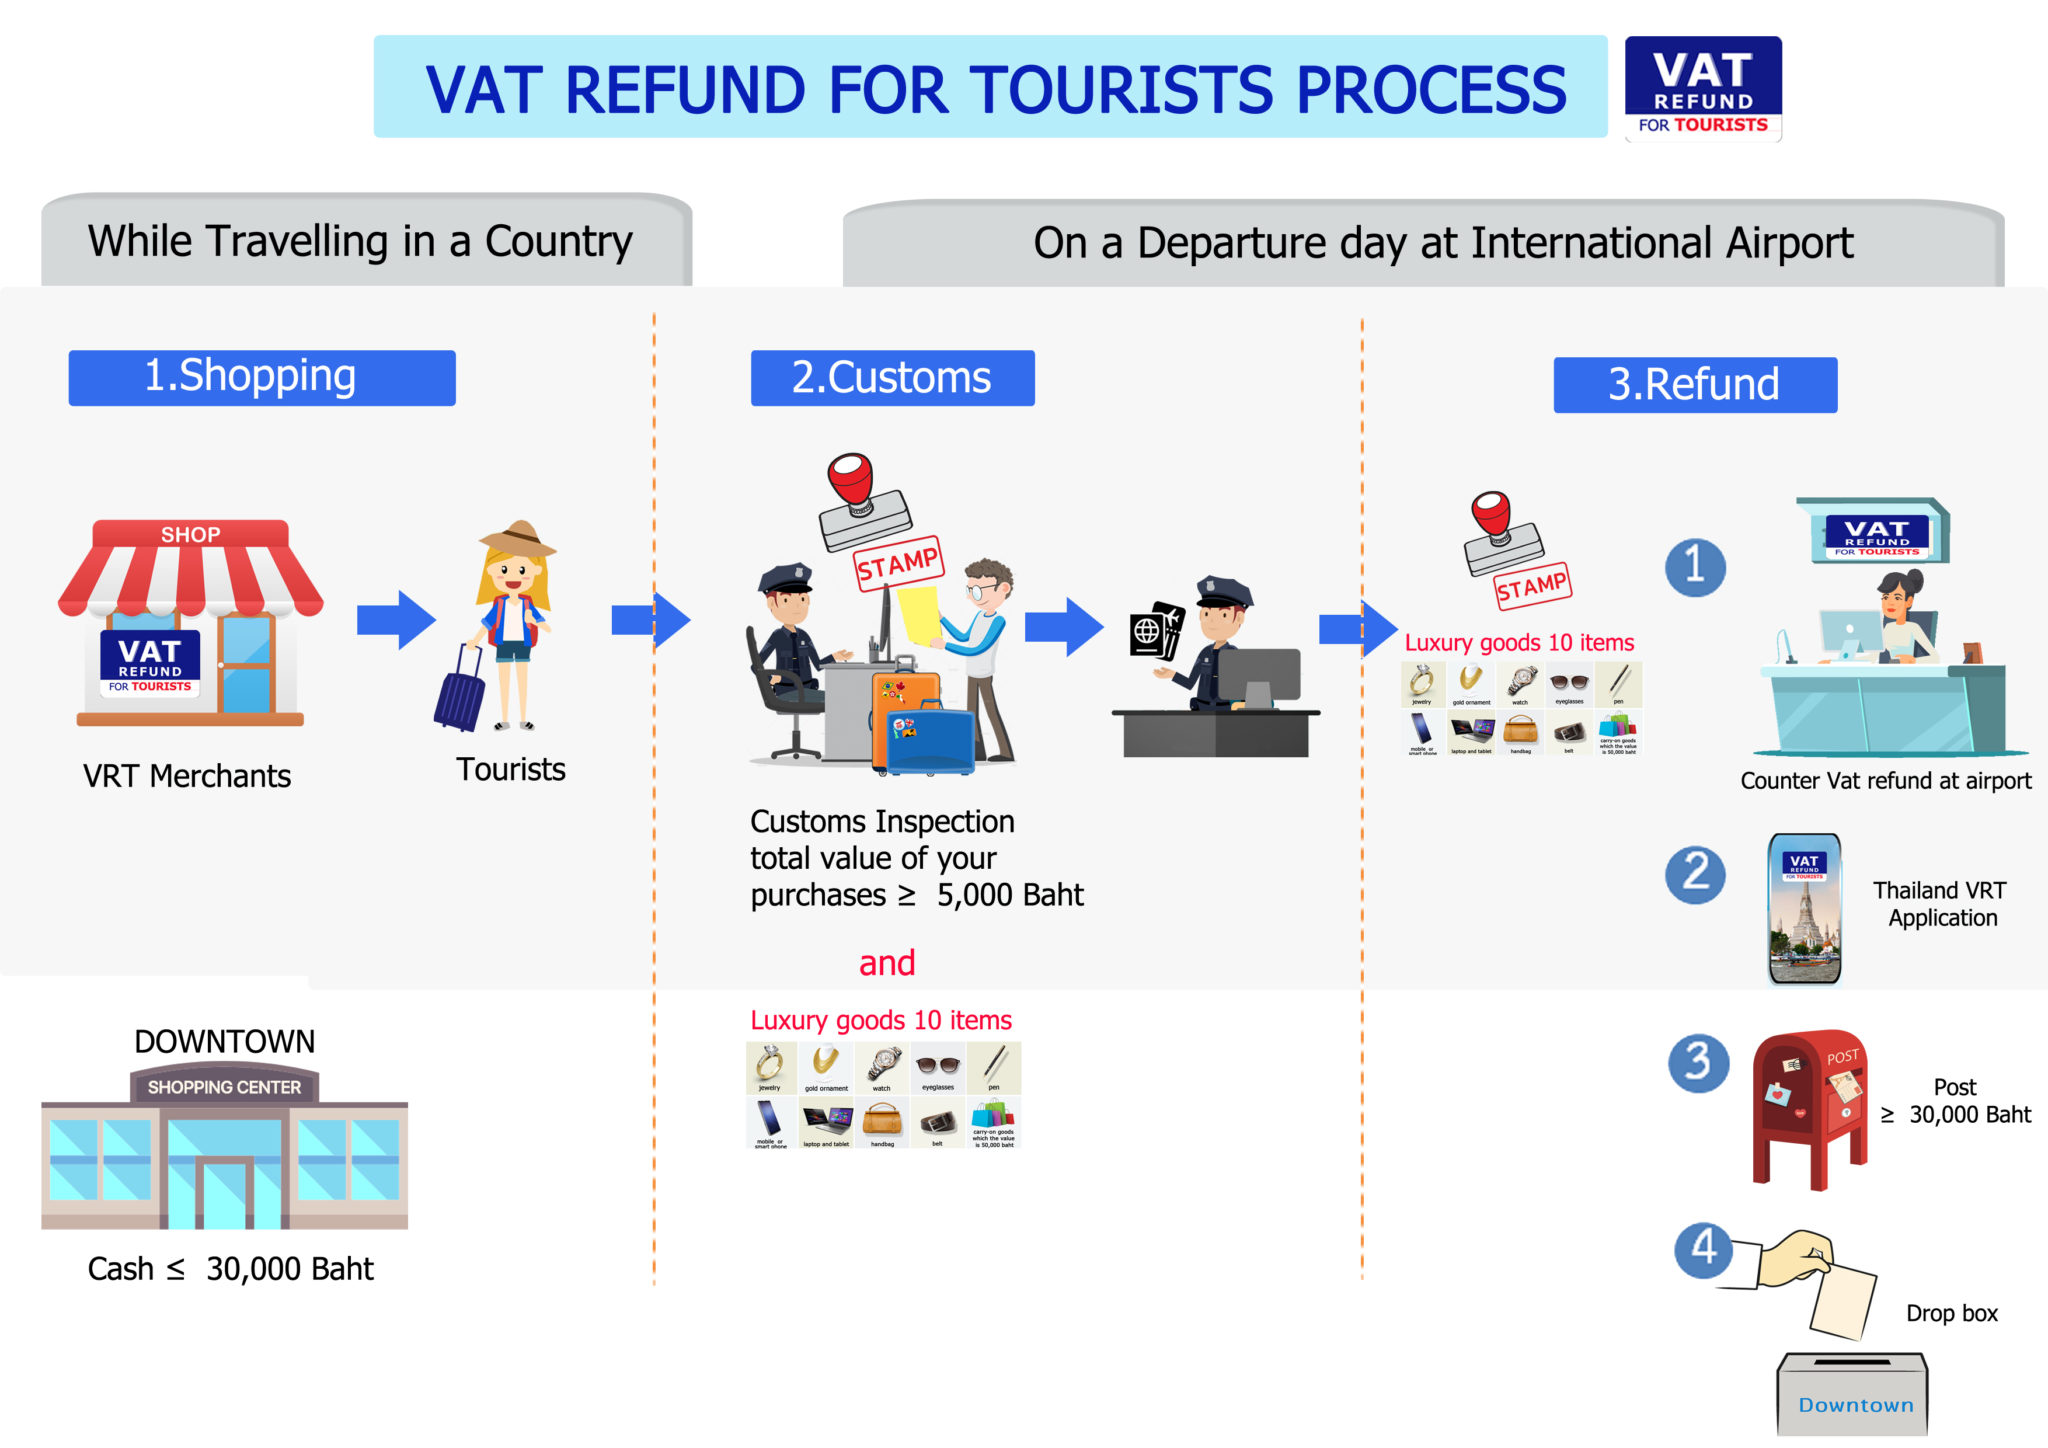 thailand-offers-vat-refund-for-tourists-thailand-insider